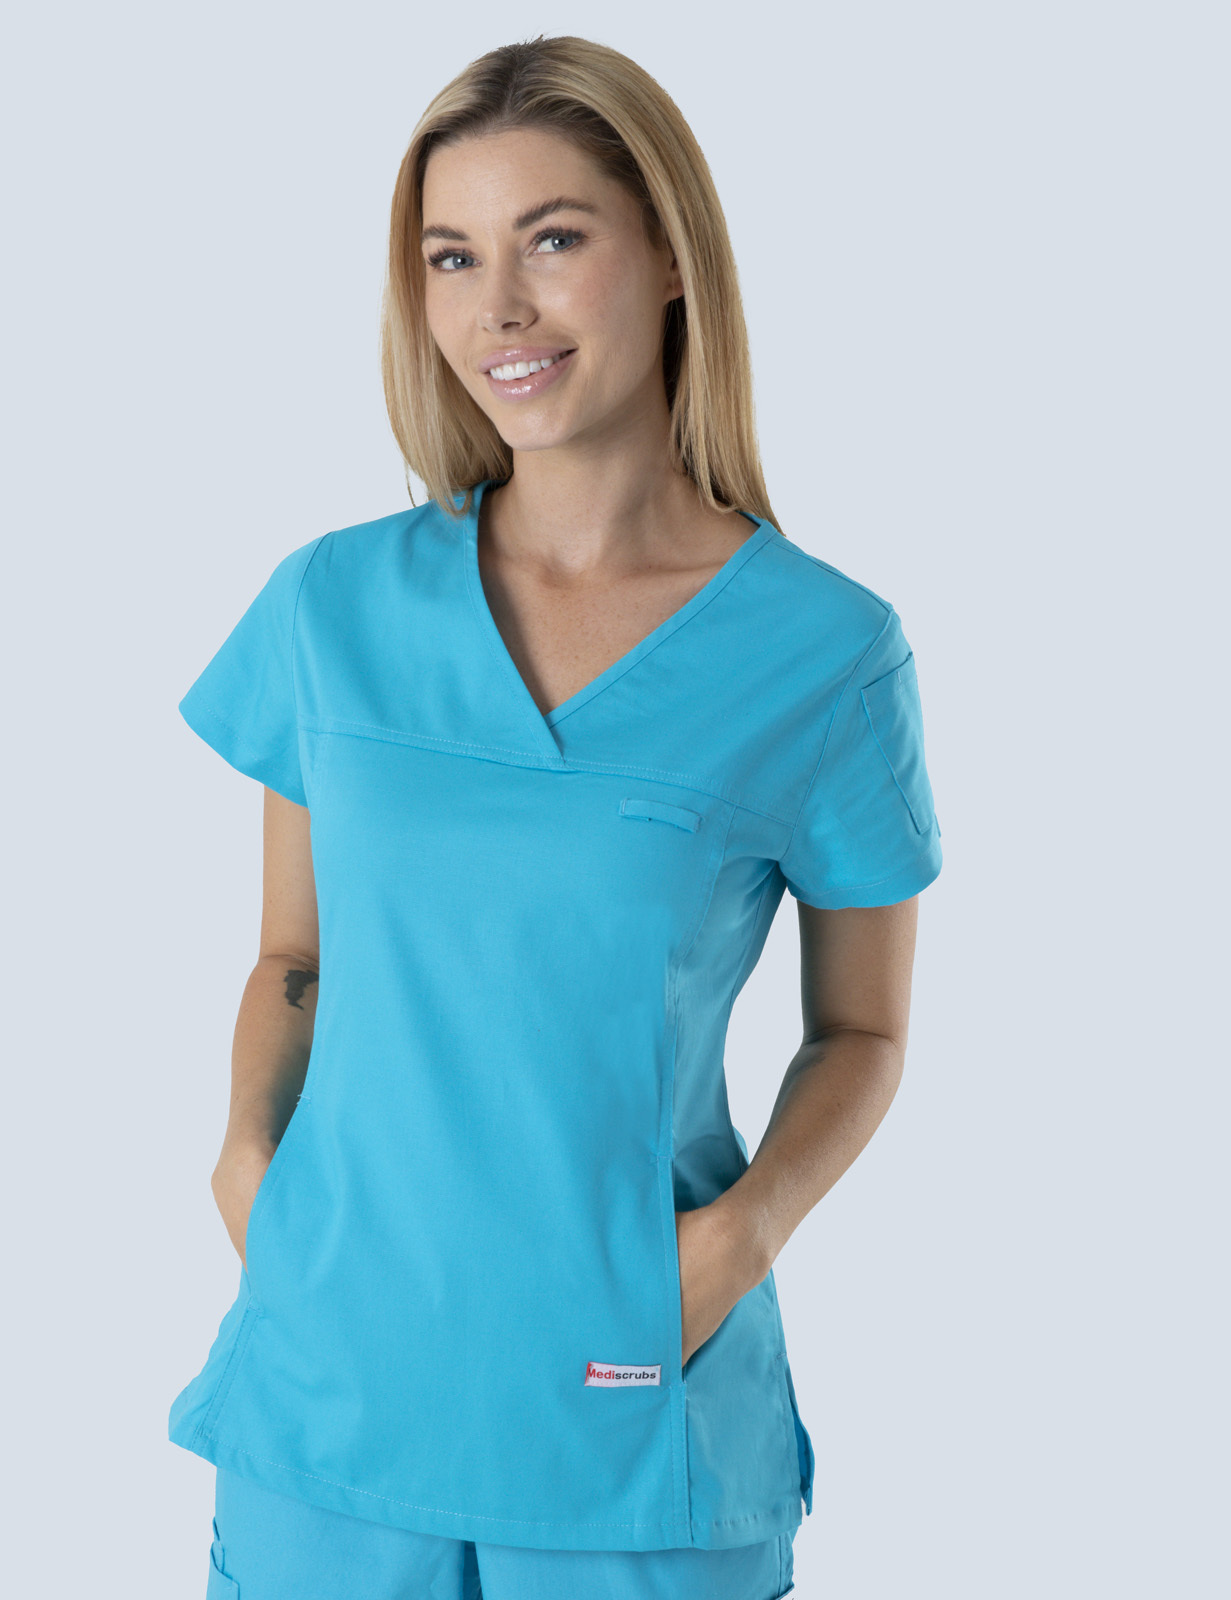 Queensland Children's Hospital Emergency Department Assistant in Nursing  Uniform Top Bundle  (Women's Fit Top in Aqua incl Logos)